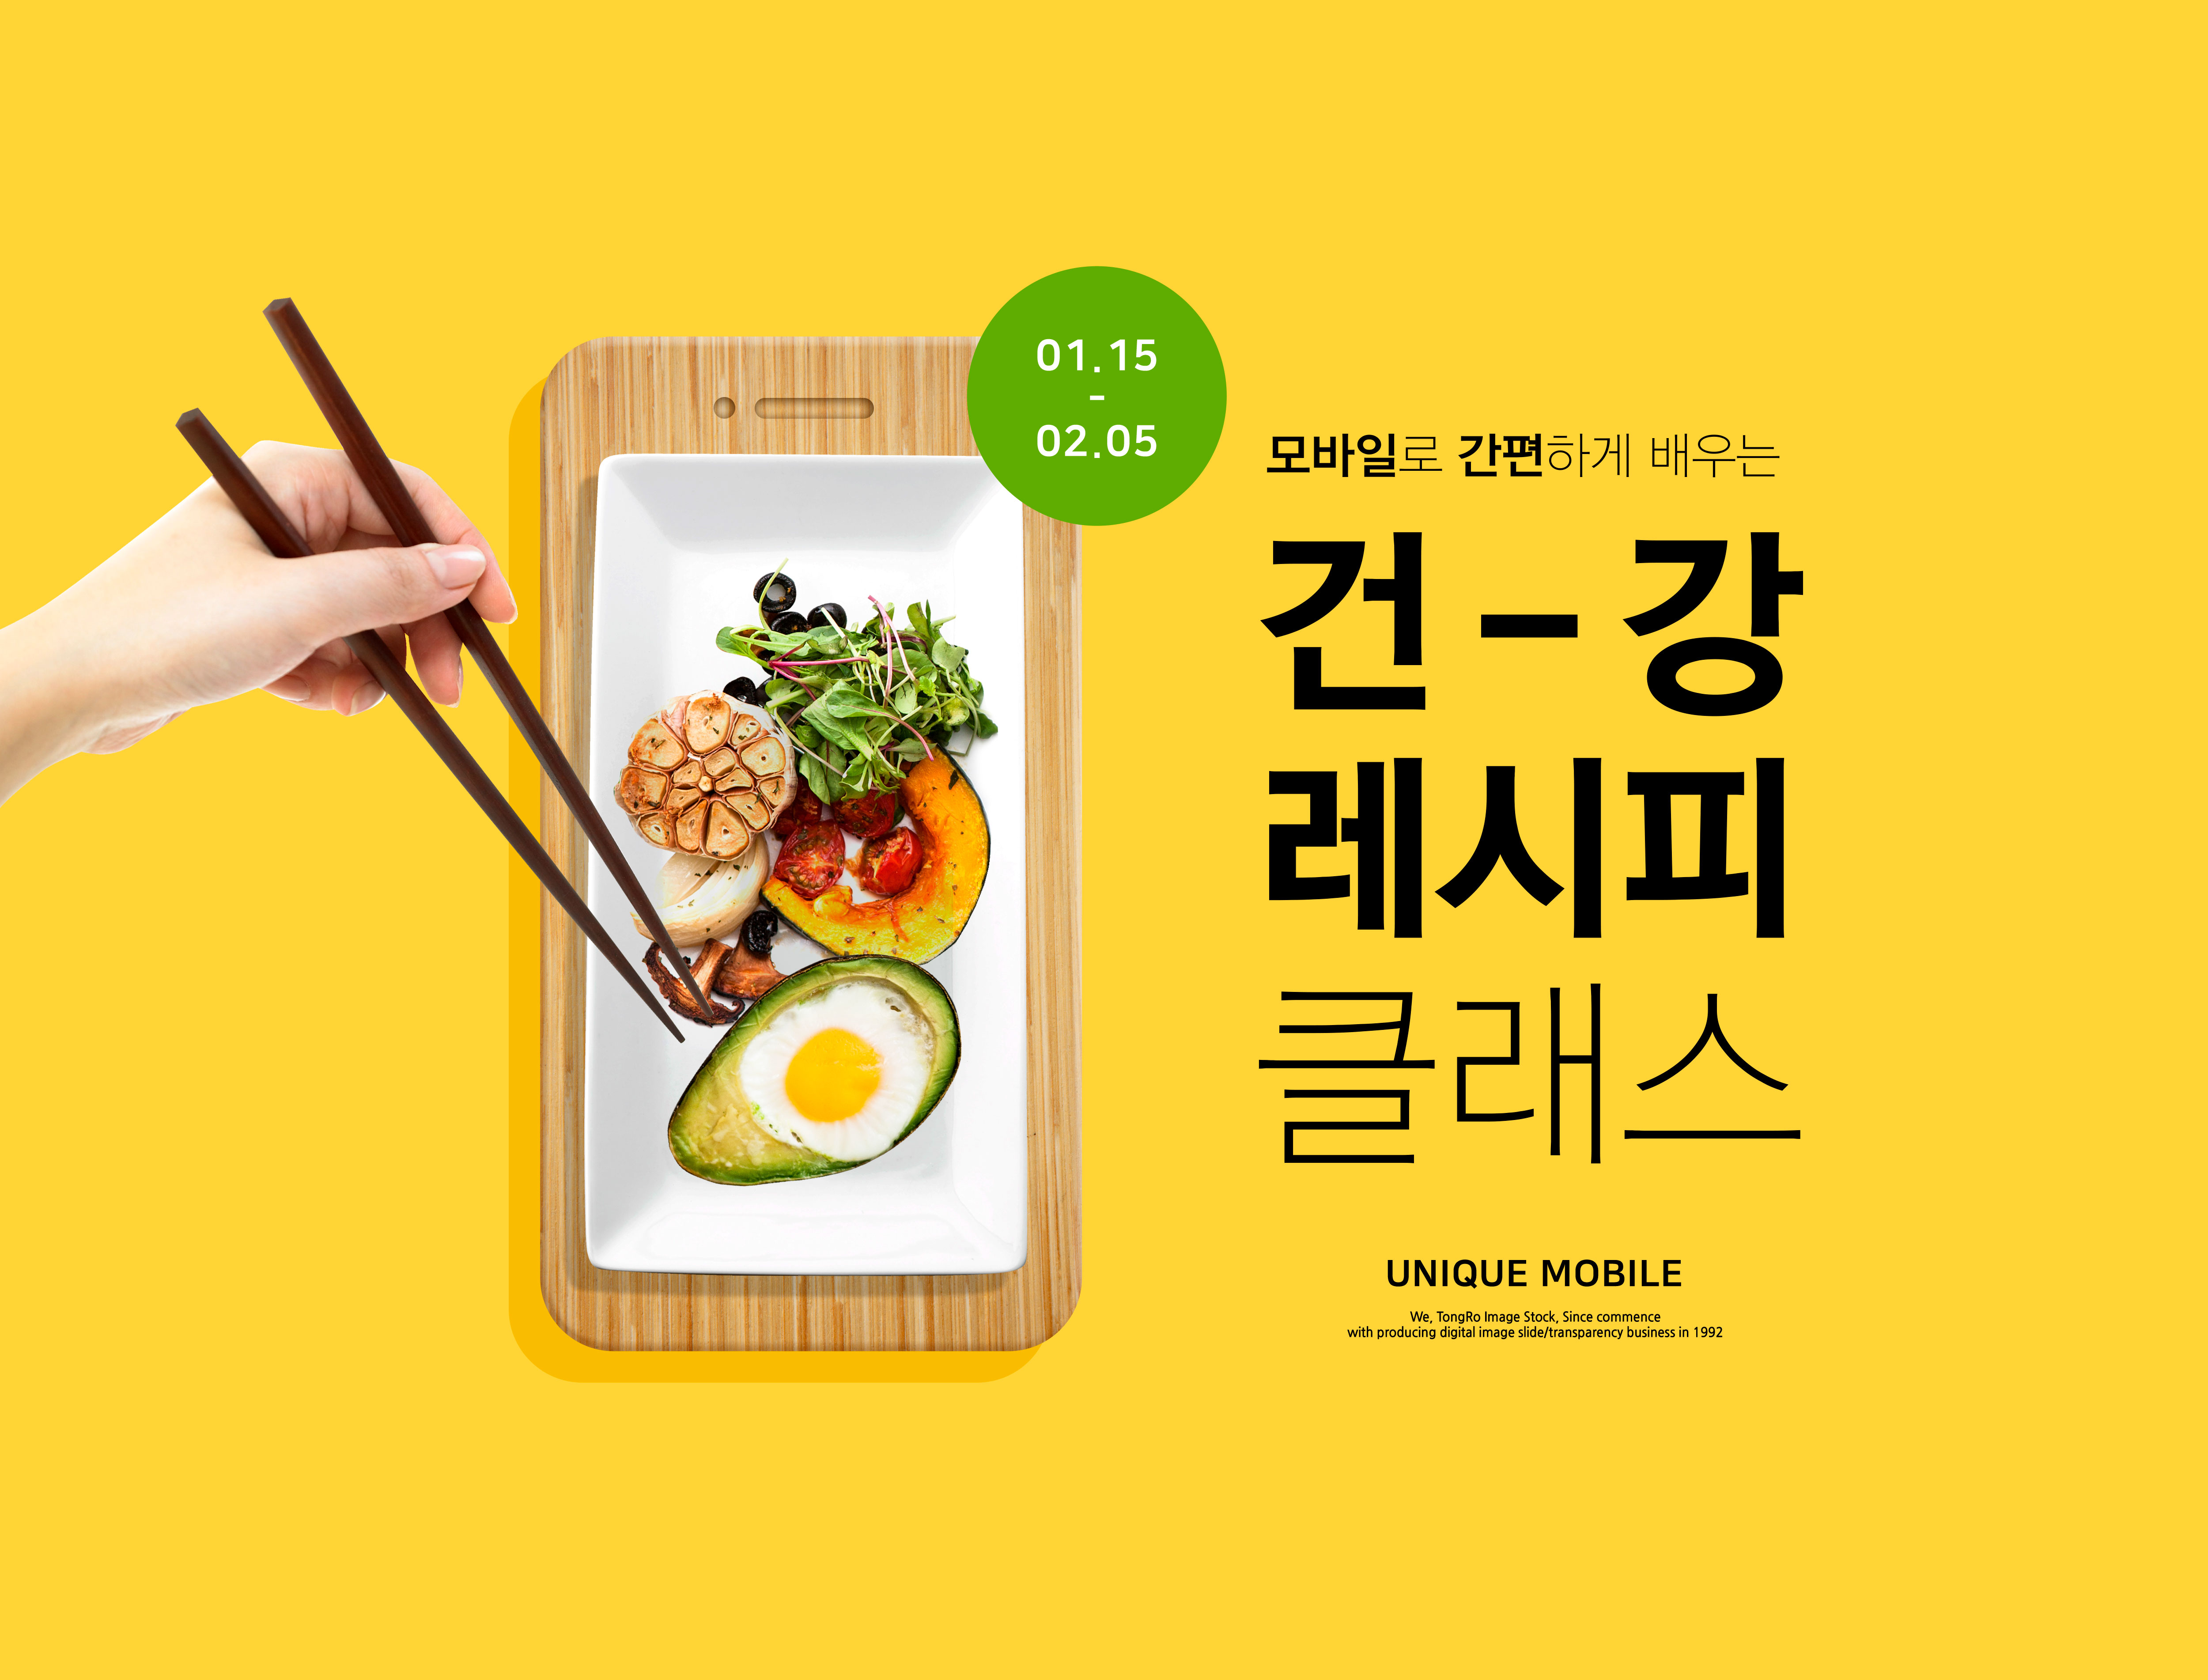 健康食谱饮食烹饪课程教学海报PSD素材非凡图库精选韩国素材插图